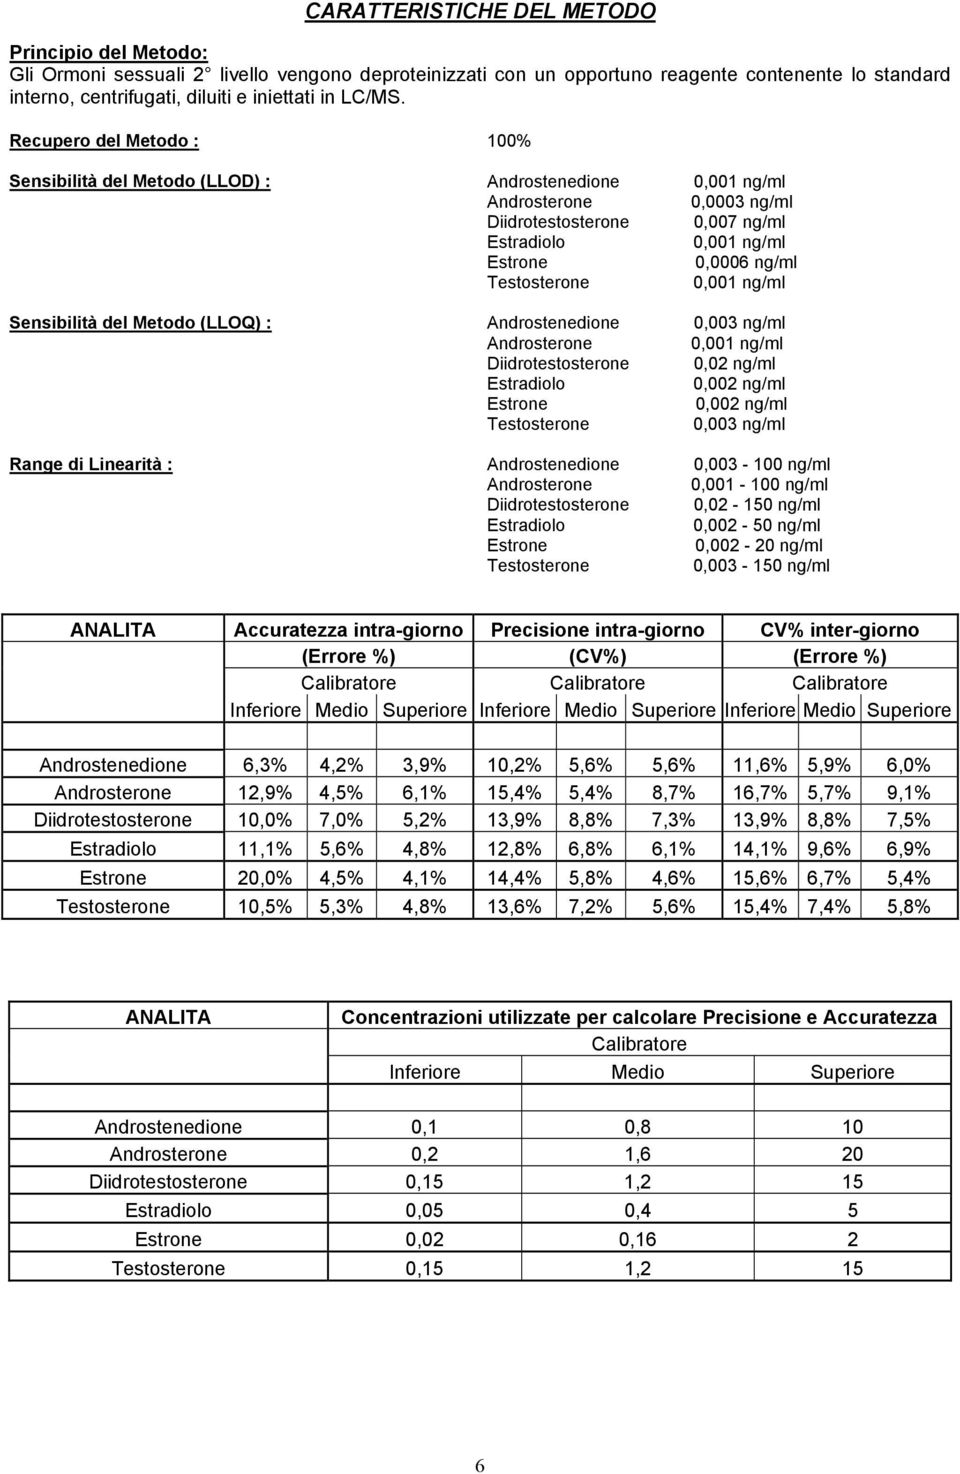 Recupero del Metodo : 1% Sensibilità del Metodo (LLOD) : Androstenedione,1 ng/ml Androsterone,3 ng/ml Diidrotestosterone,7 ng/ml Estradiolo,1 ng/ml Estrone, ng/ml Testosterone,1 ng/ml Sensibilità del